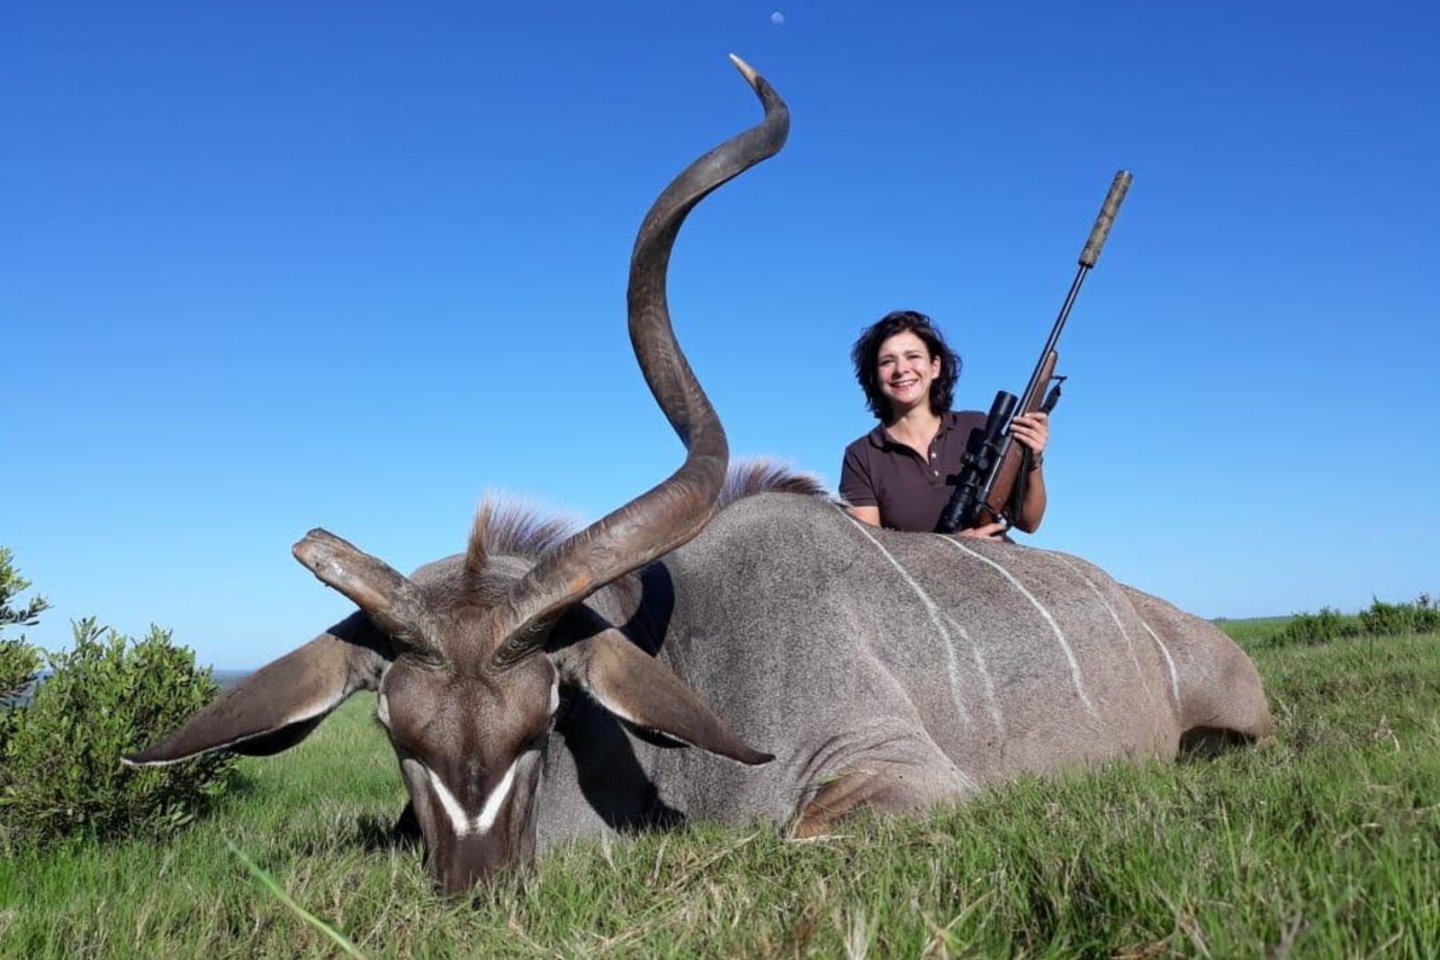  Lina senokai paneigė mitą, kad medžioklė ir moteriškumas nesuderinama. <br>Nuotr. iš asmeninio albumo